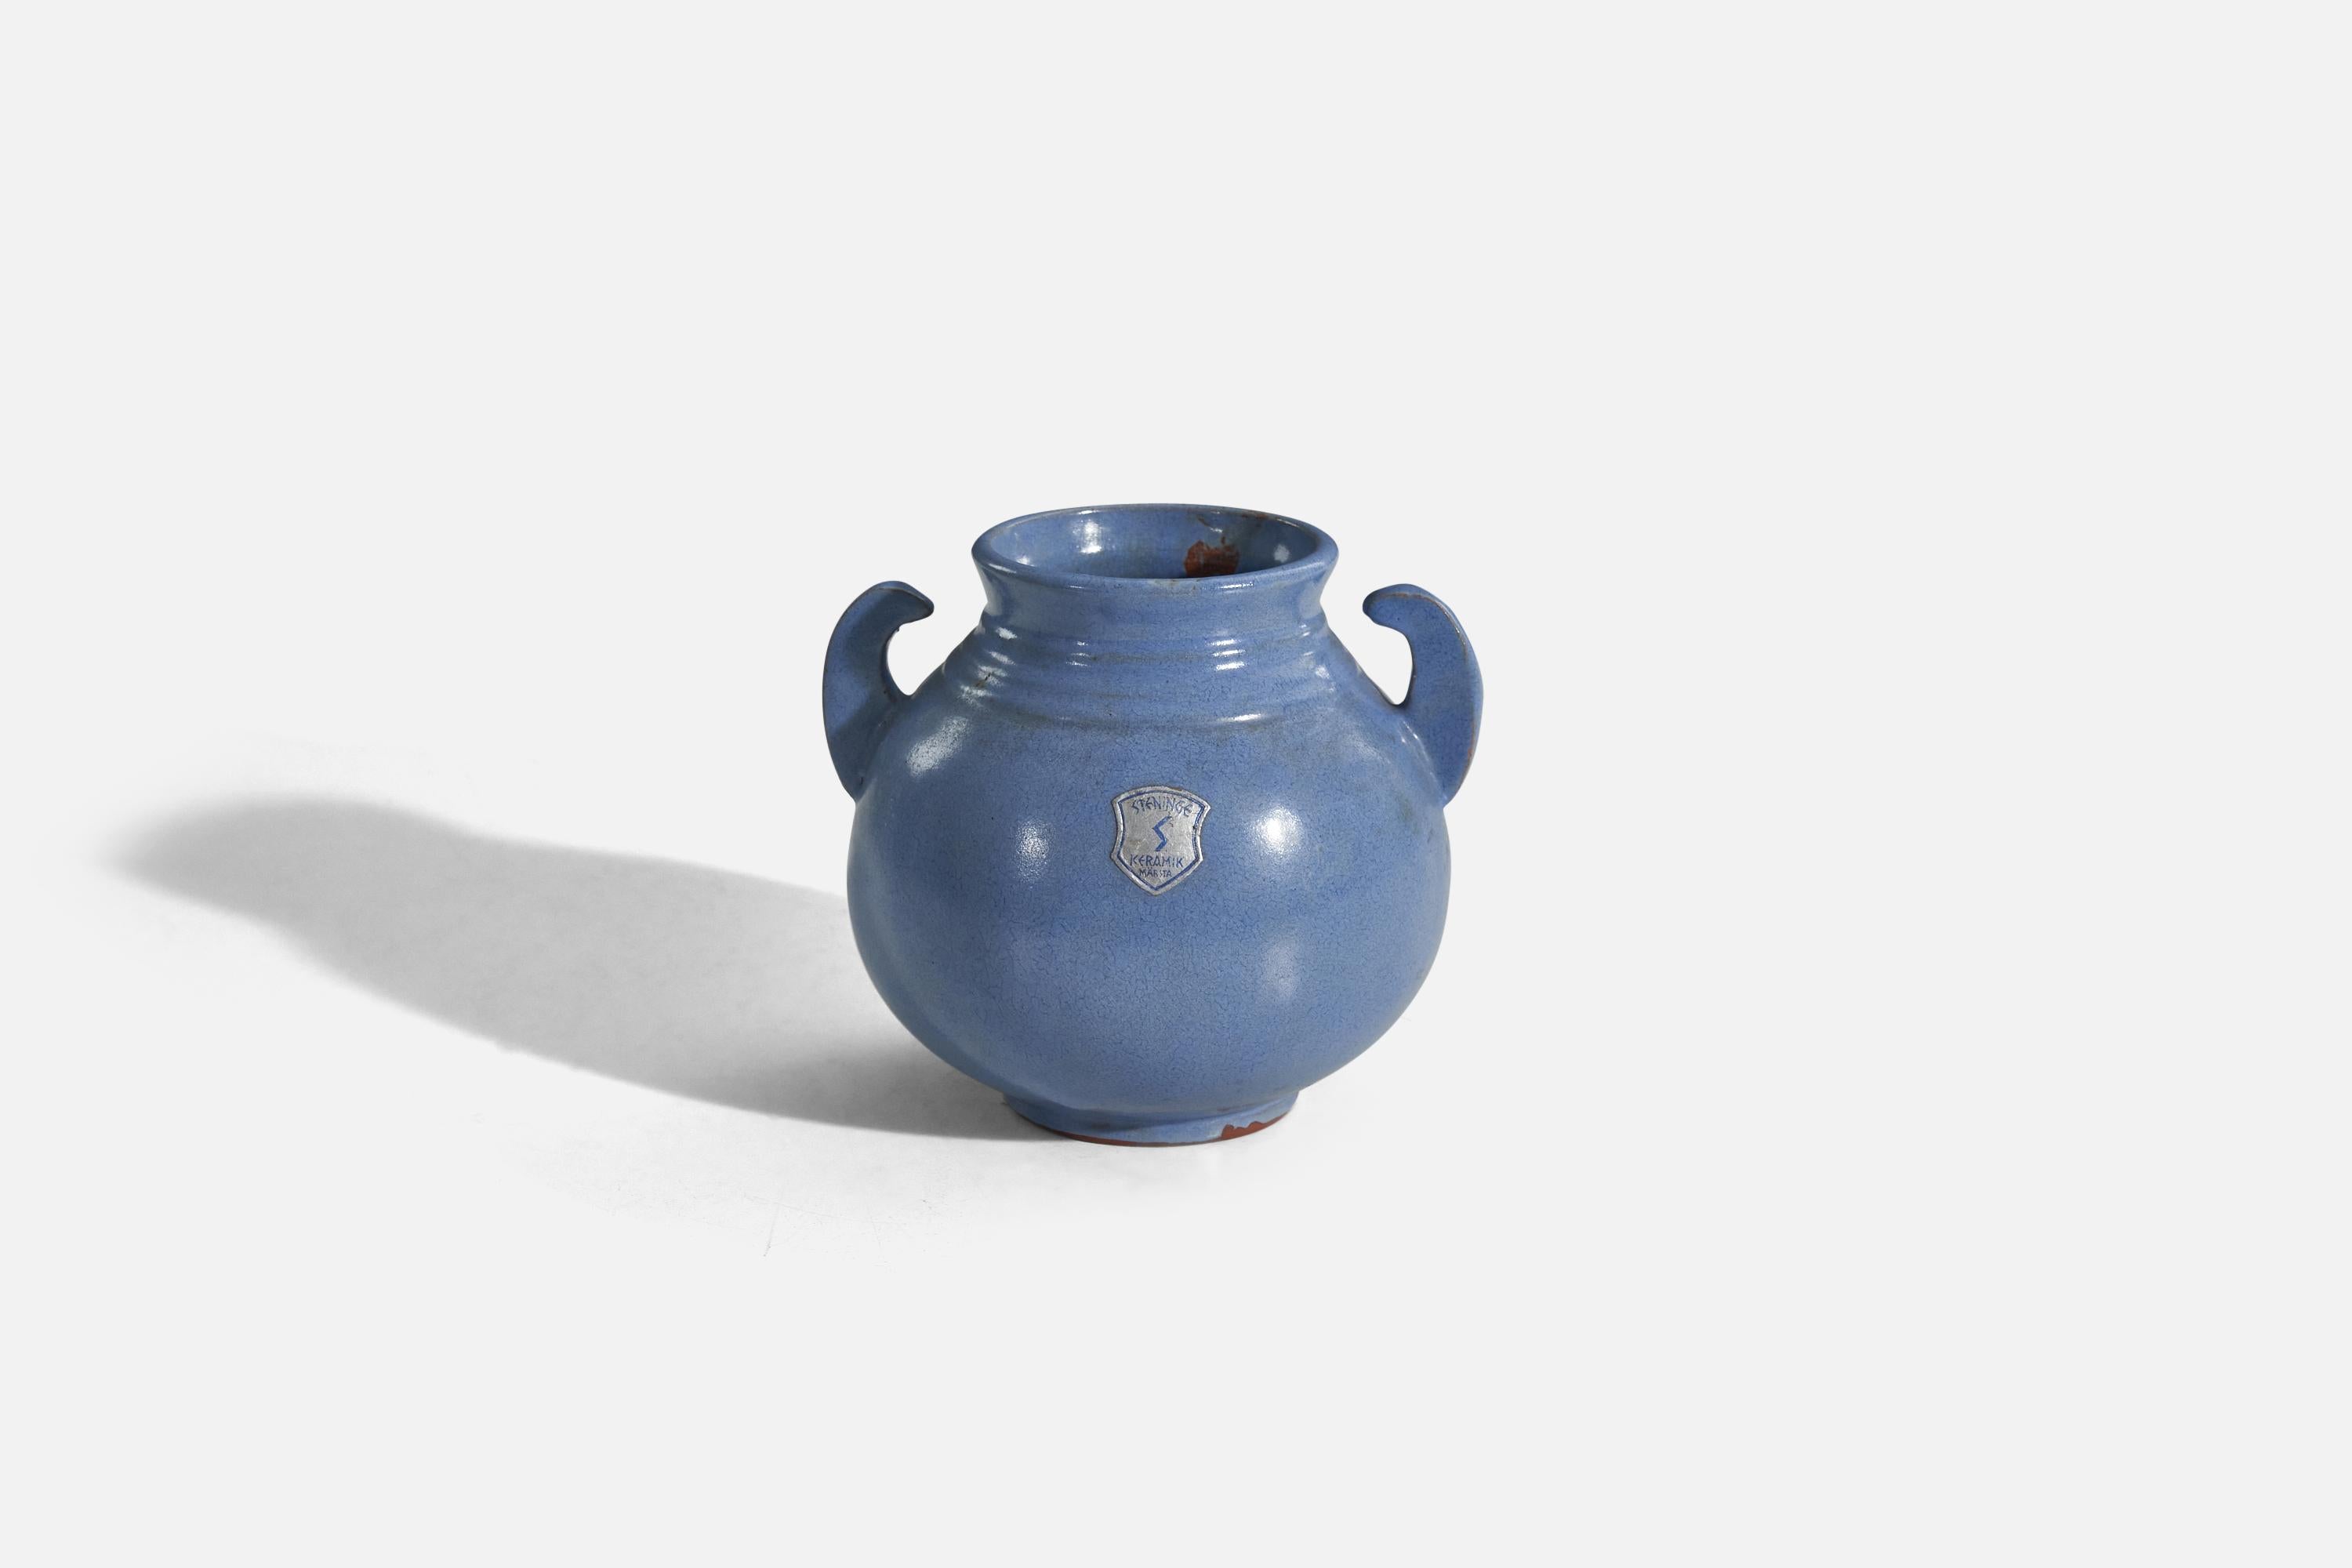 A blue, glazed earthenware vase designed and produced by Steninge Keramik AB, Märsta, Sweden, c. 1970s.
   